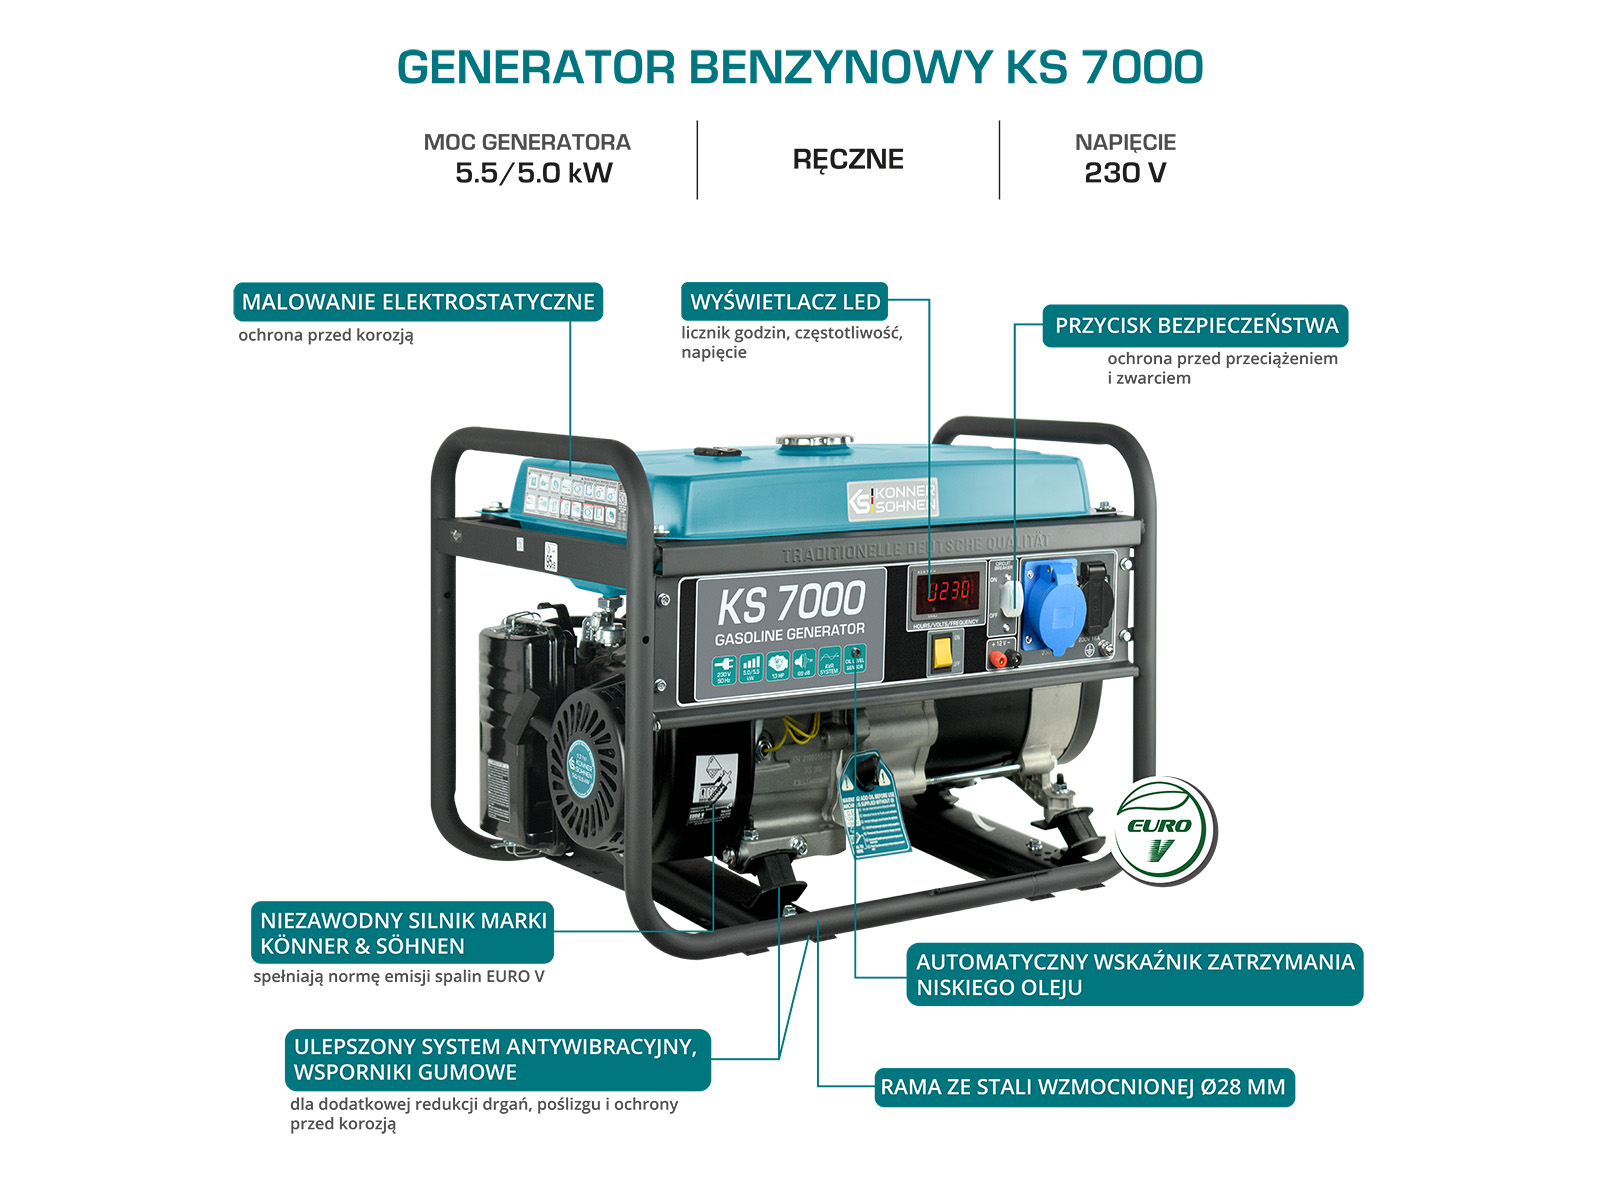 Generator benzynowy "Könner & Söhnen" KS 7000